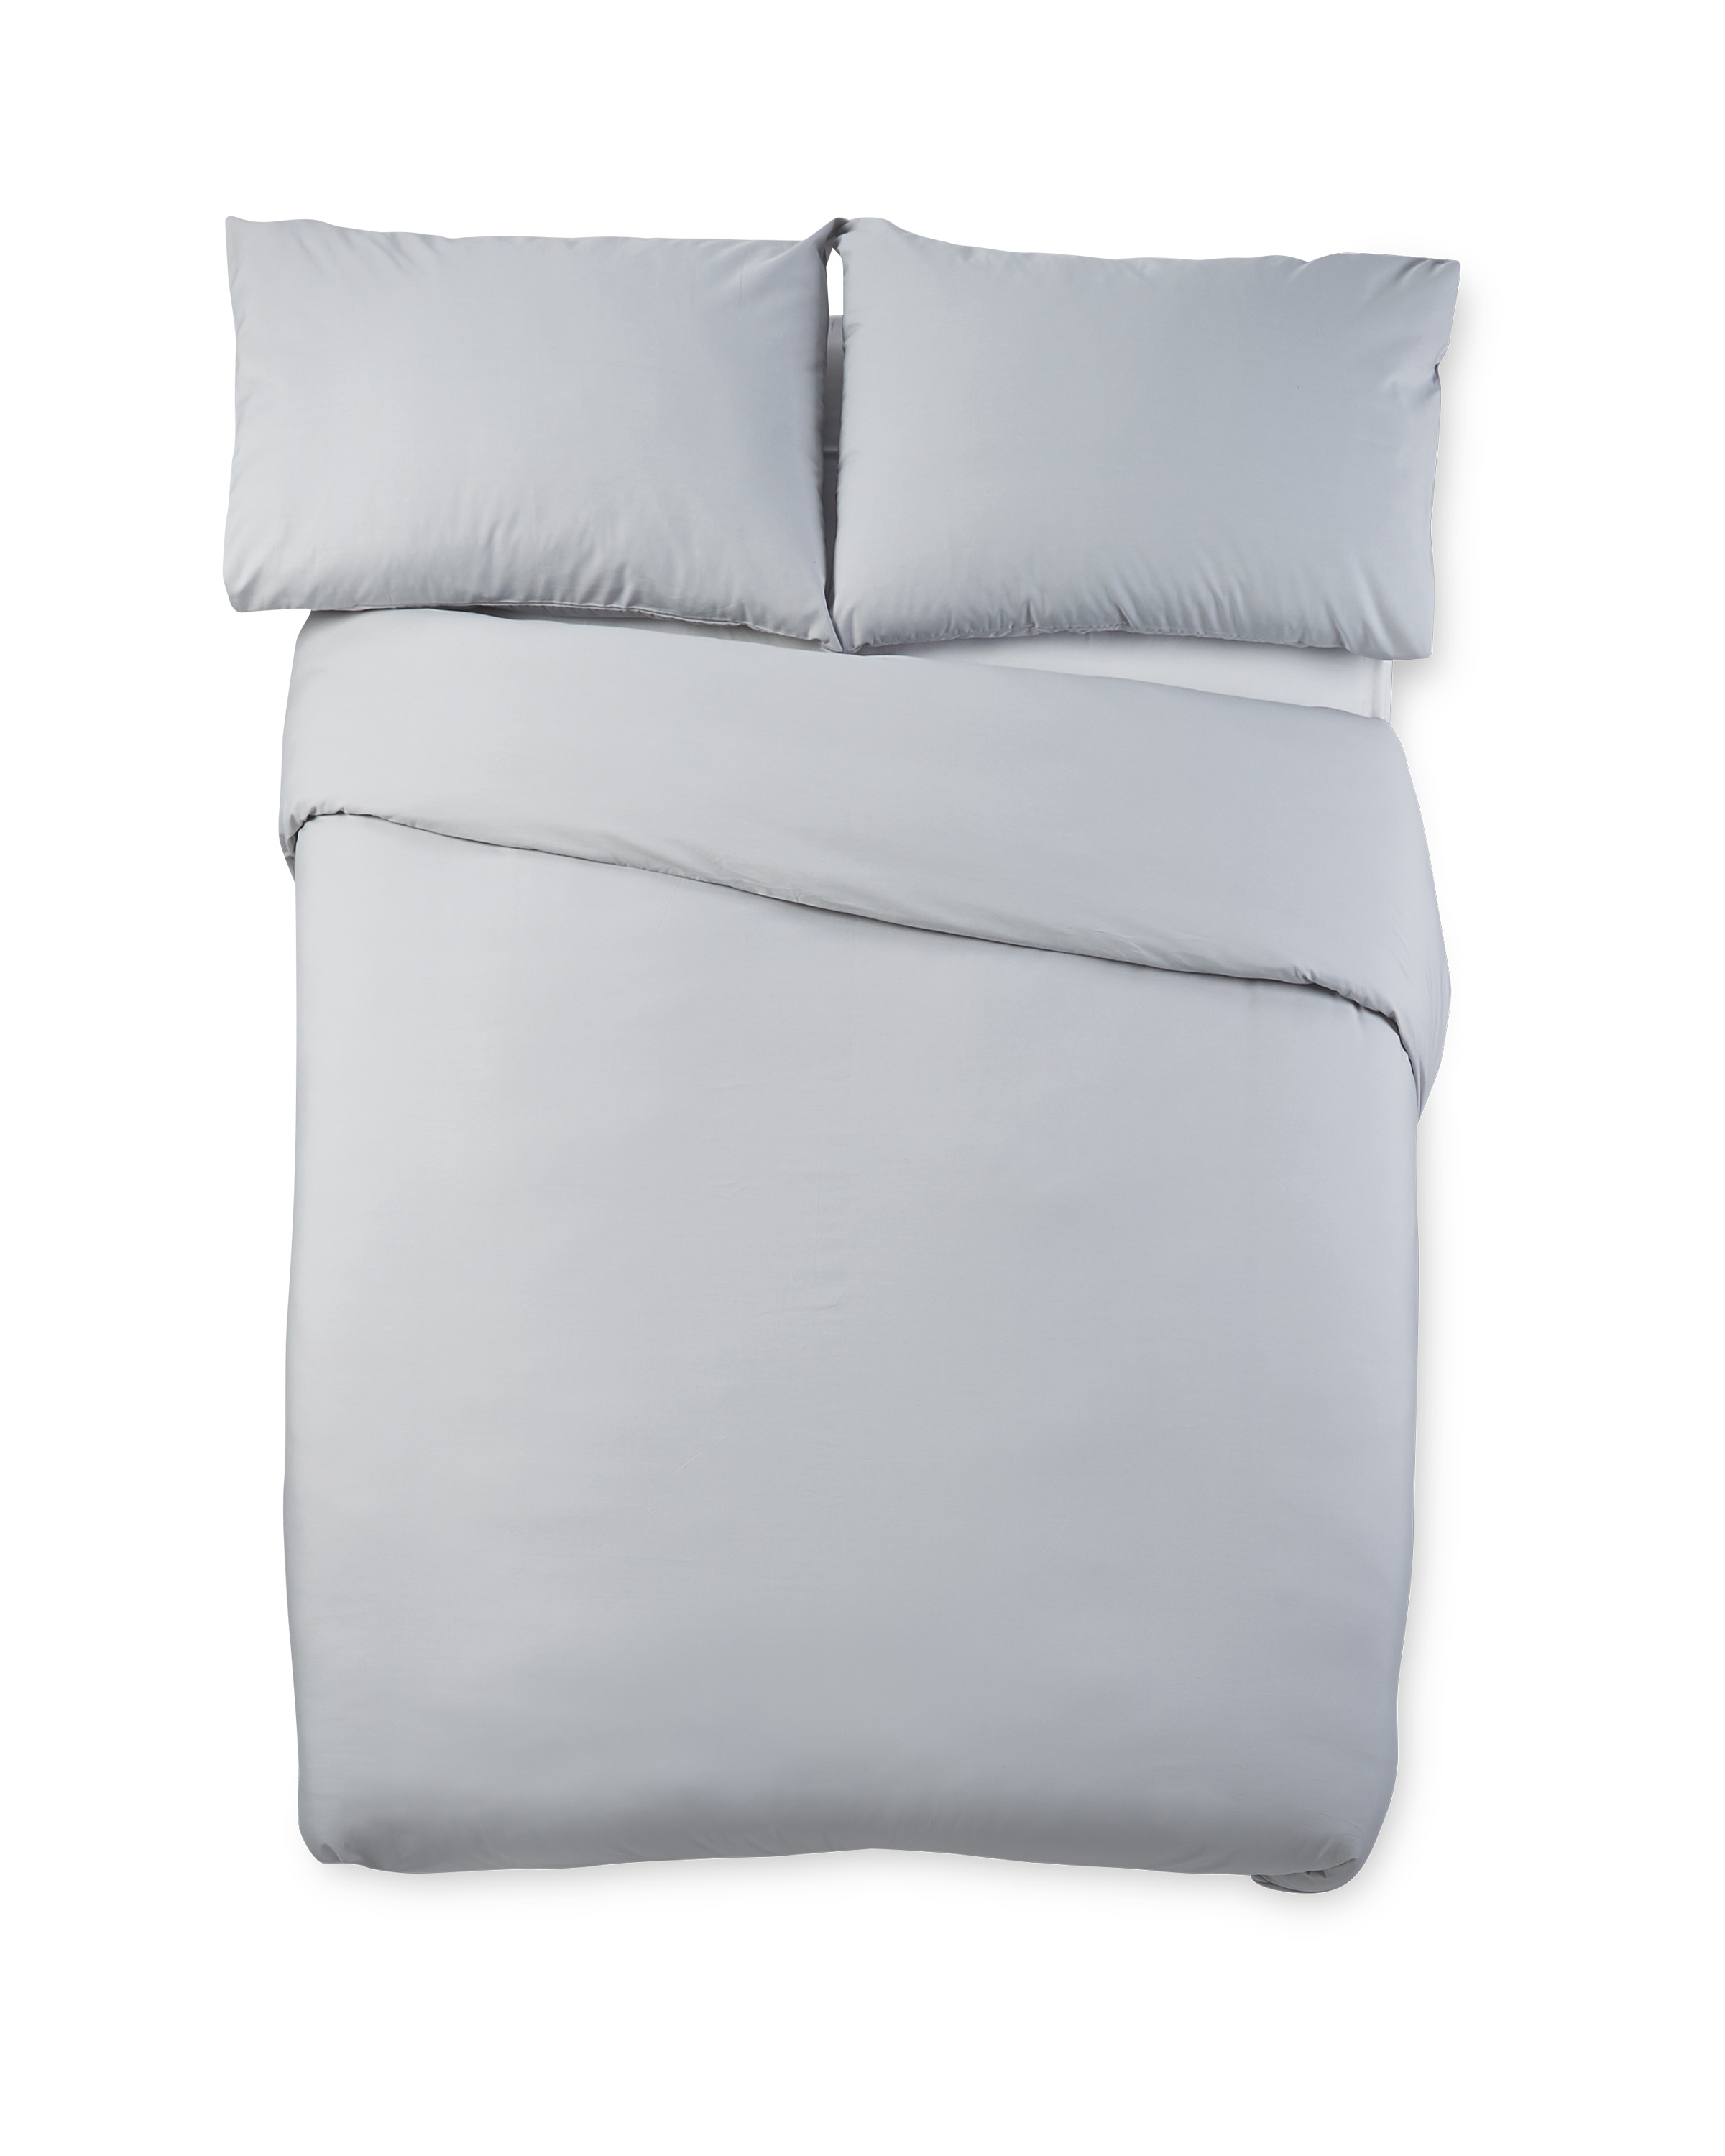 Grey Cooling Super King Duvet Set Aldi Uk, Grey Super King Bed Covers